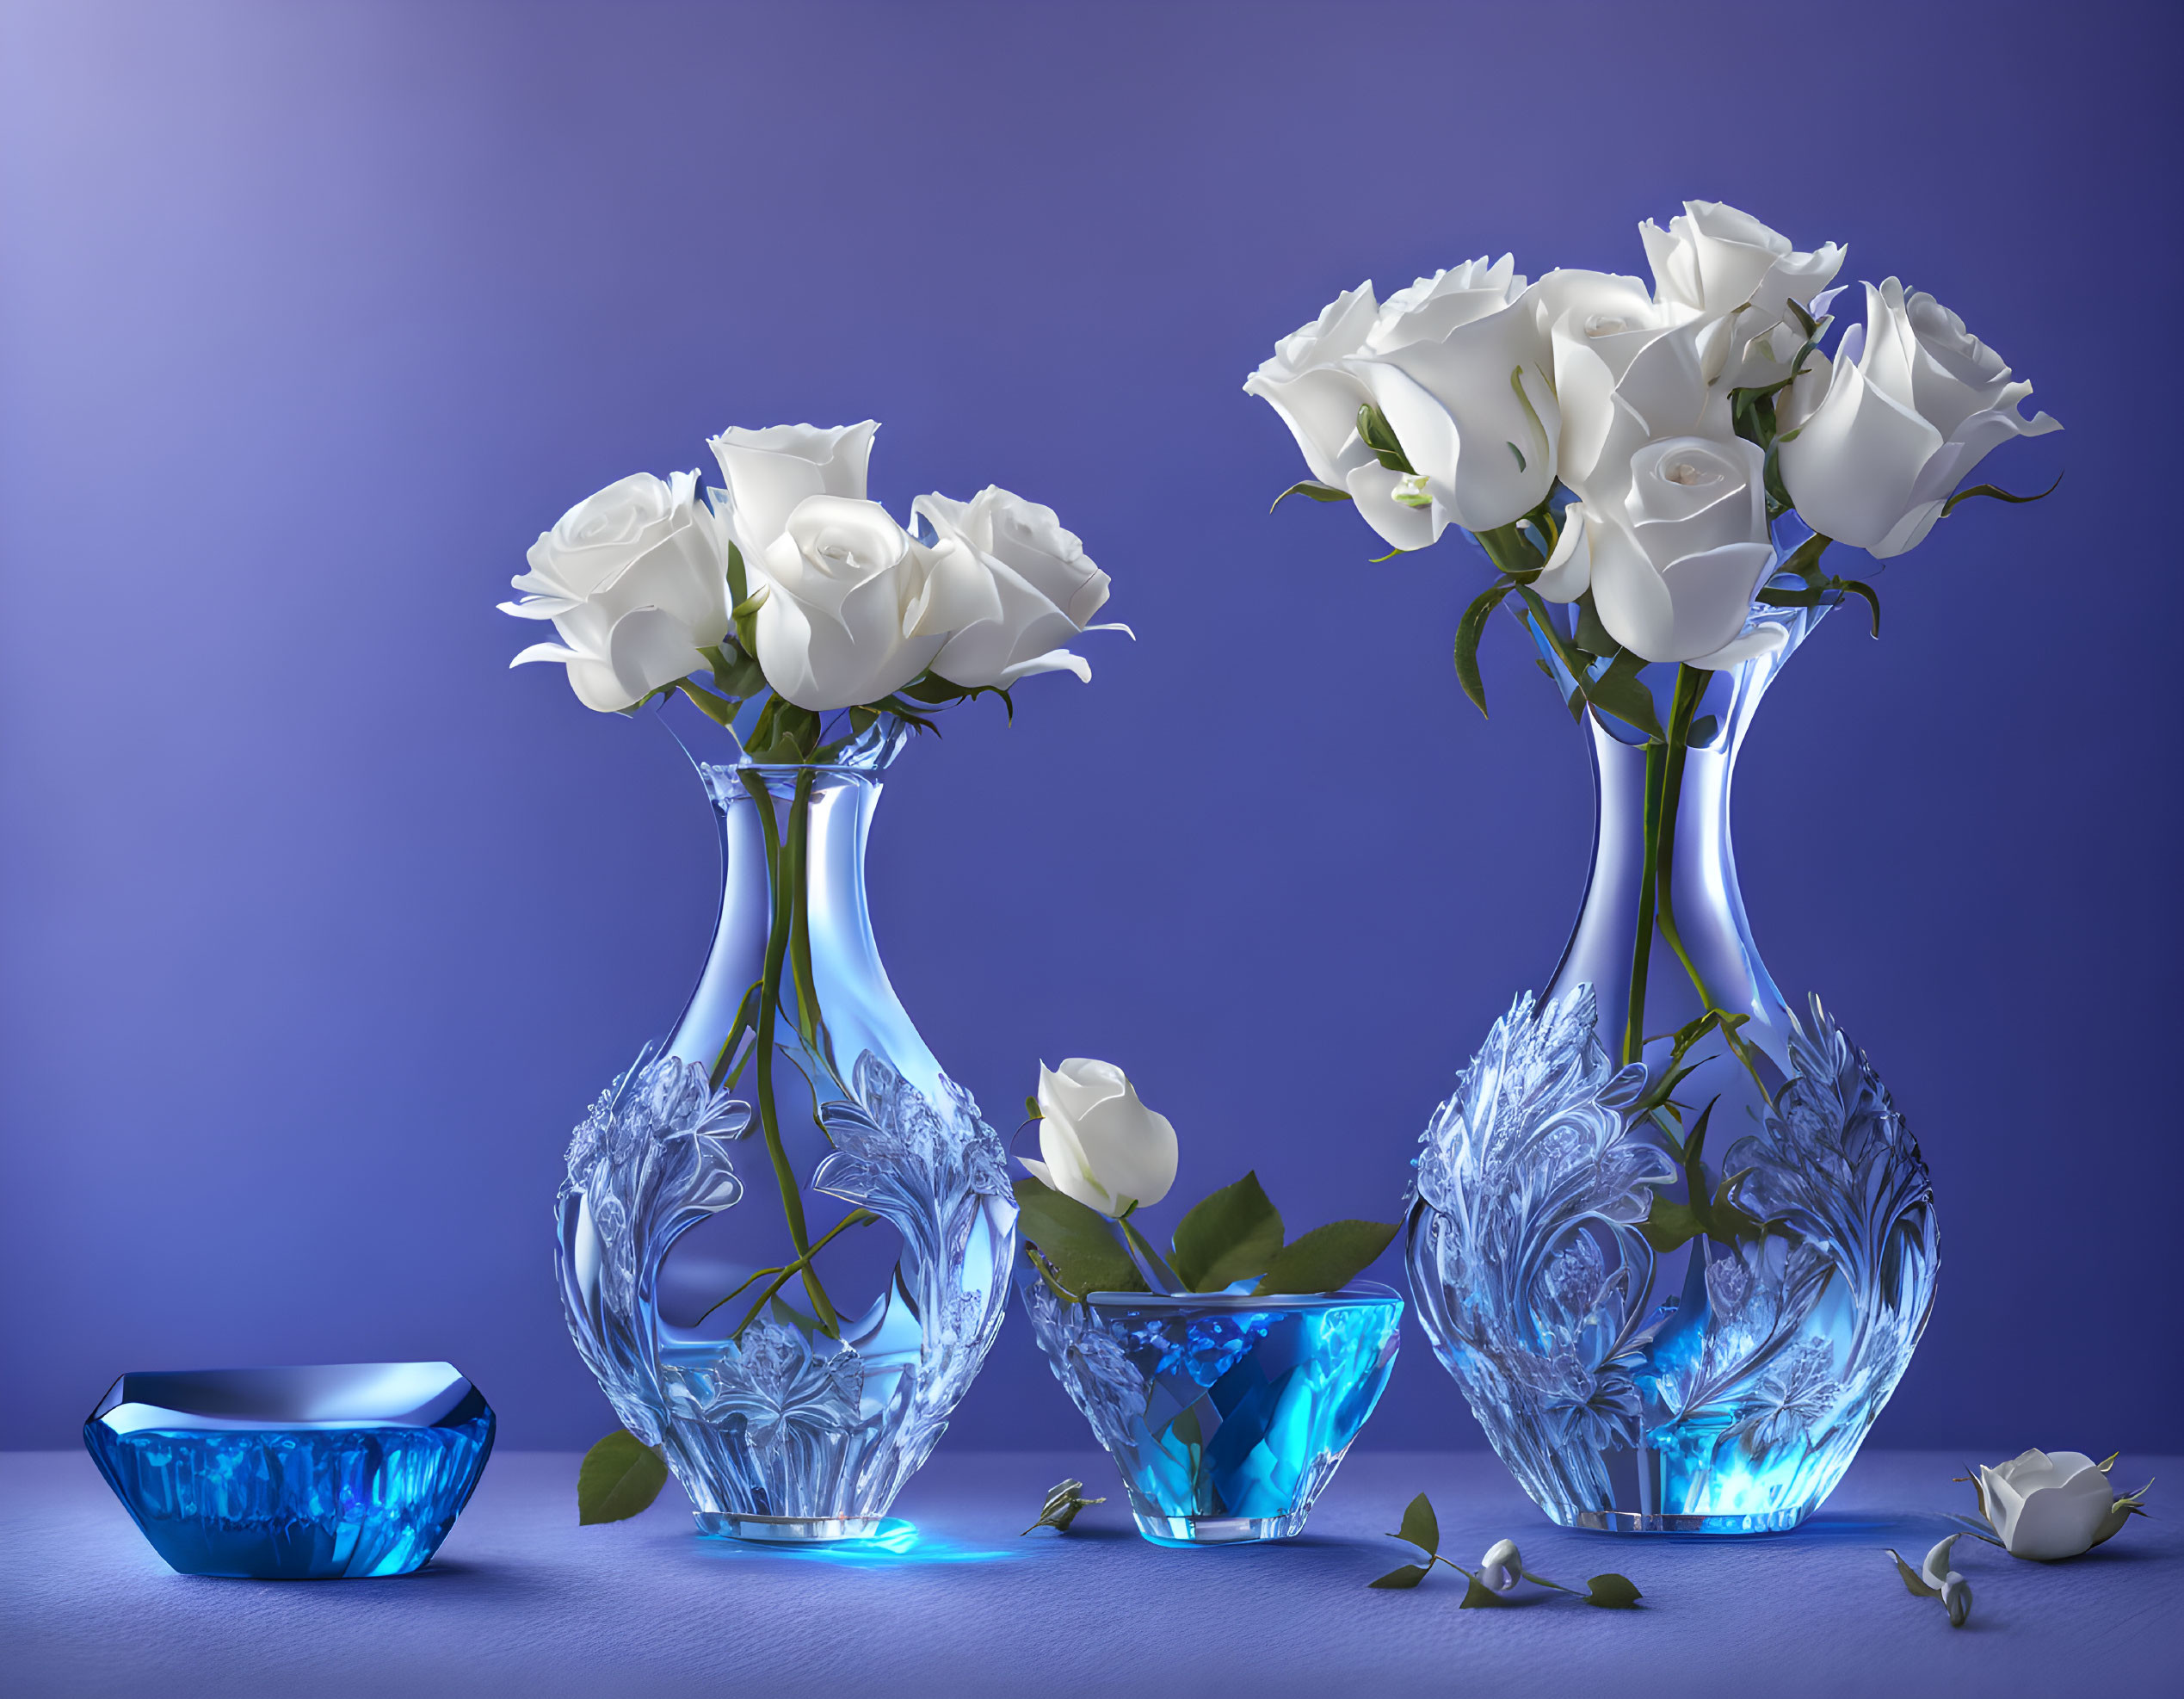 Elegant Floral Arrangements on Blue